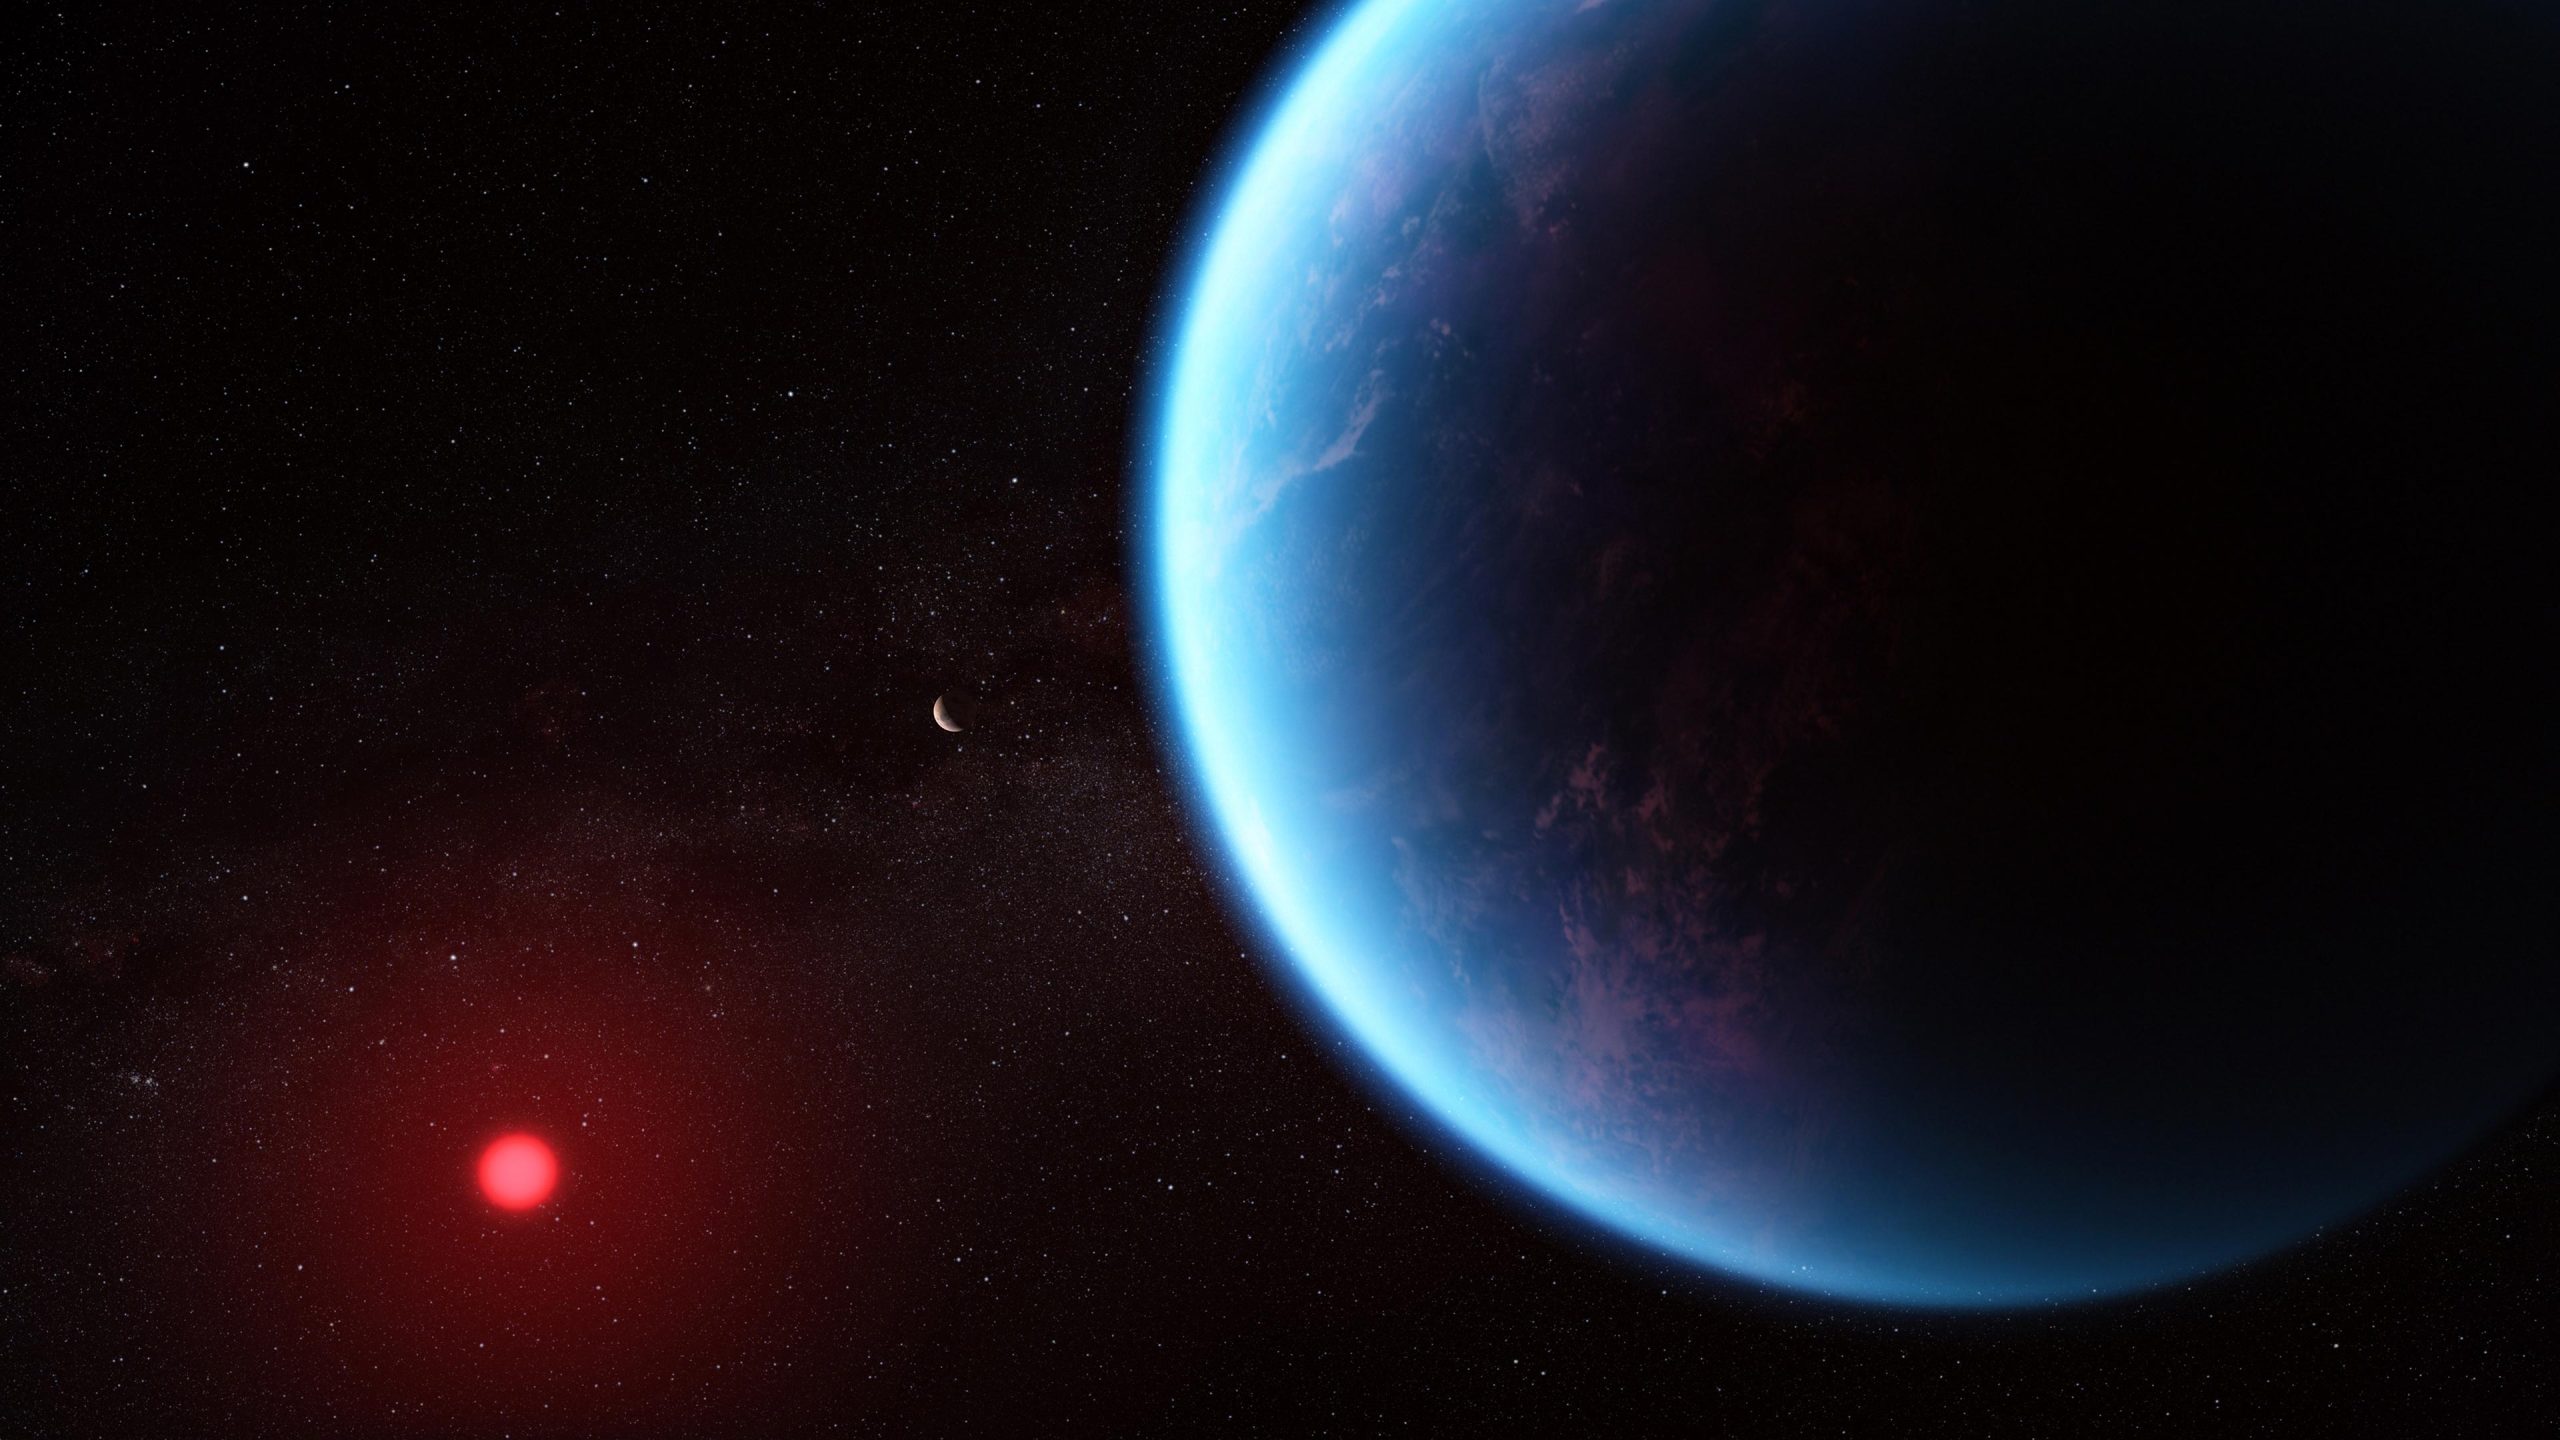 Exoplanet-K2-18-b-scaled.jpg